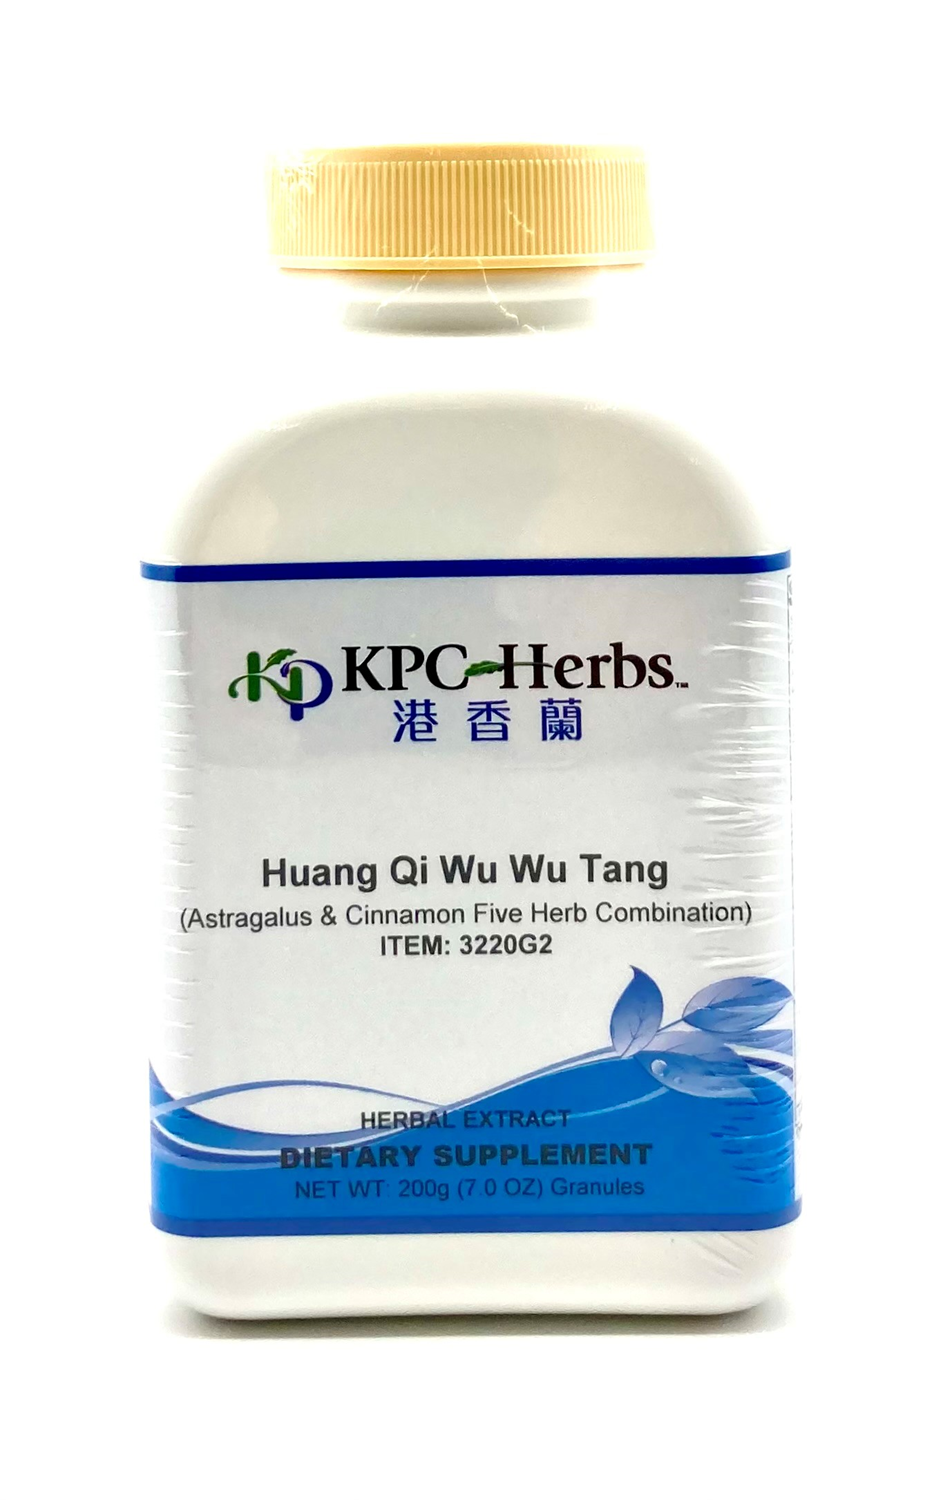 Huang Qi Wu Wu Tang Granules, 200g